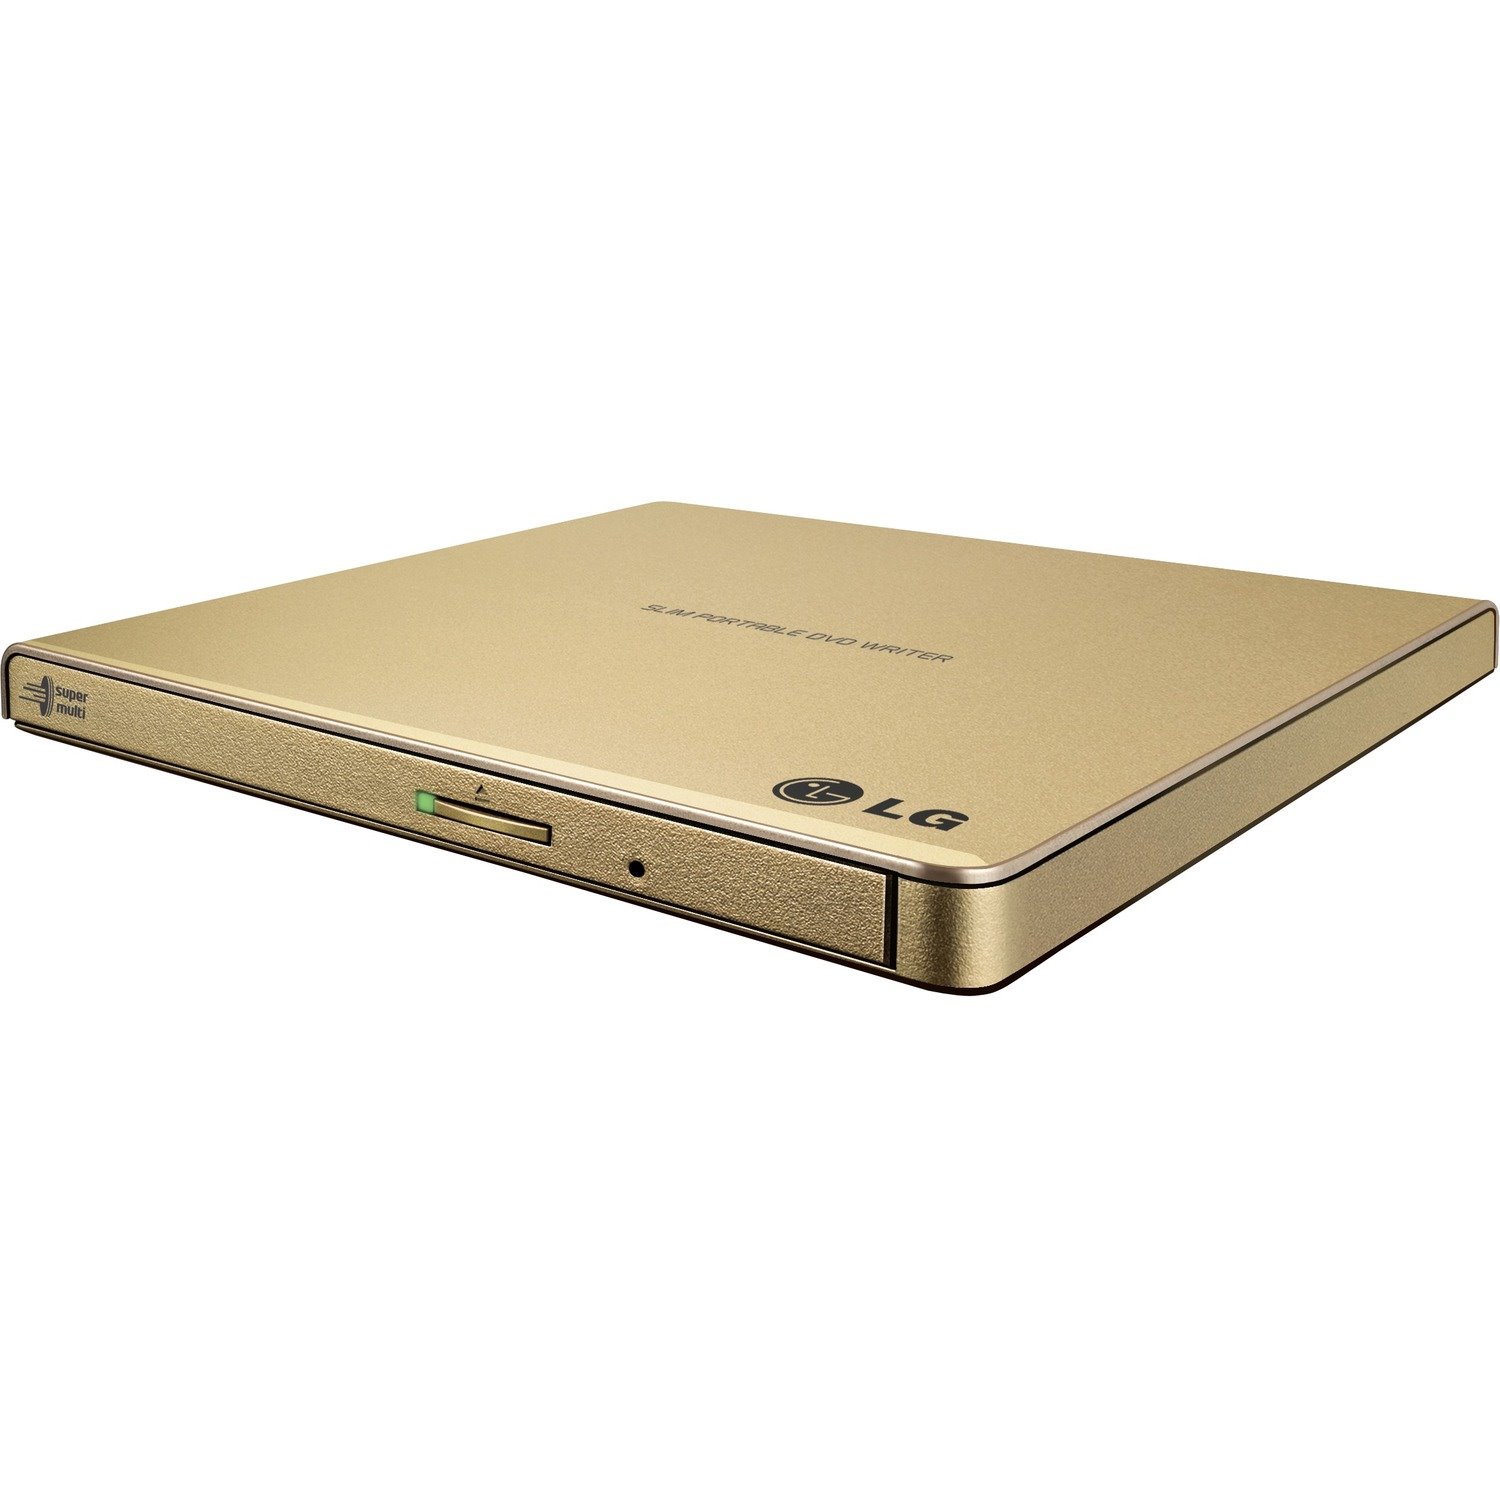 LG GP65NG60 DVD-Writer - Gold